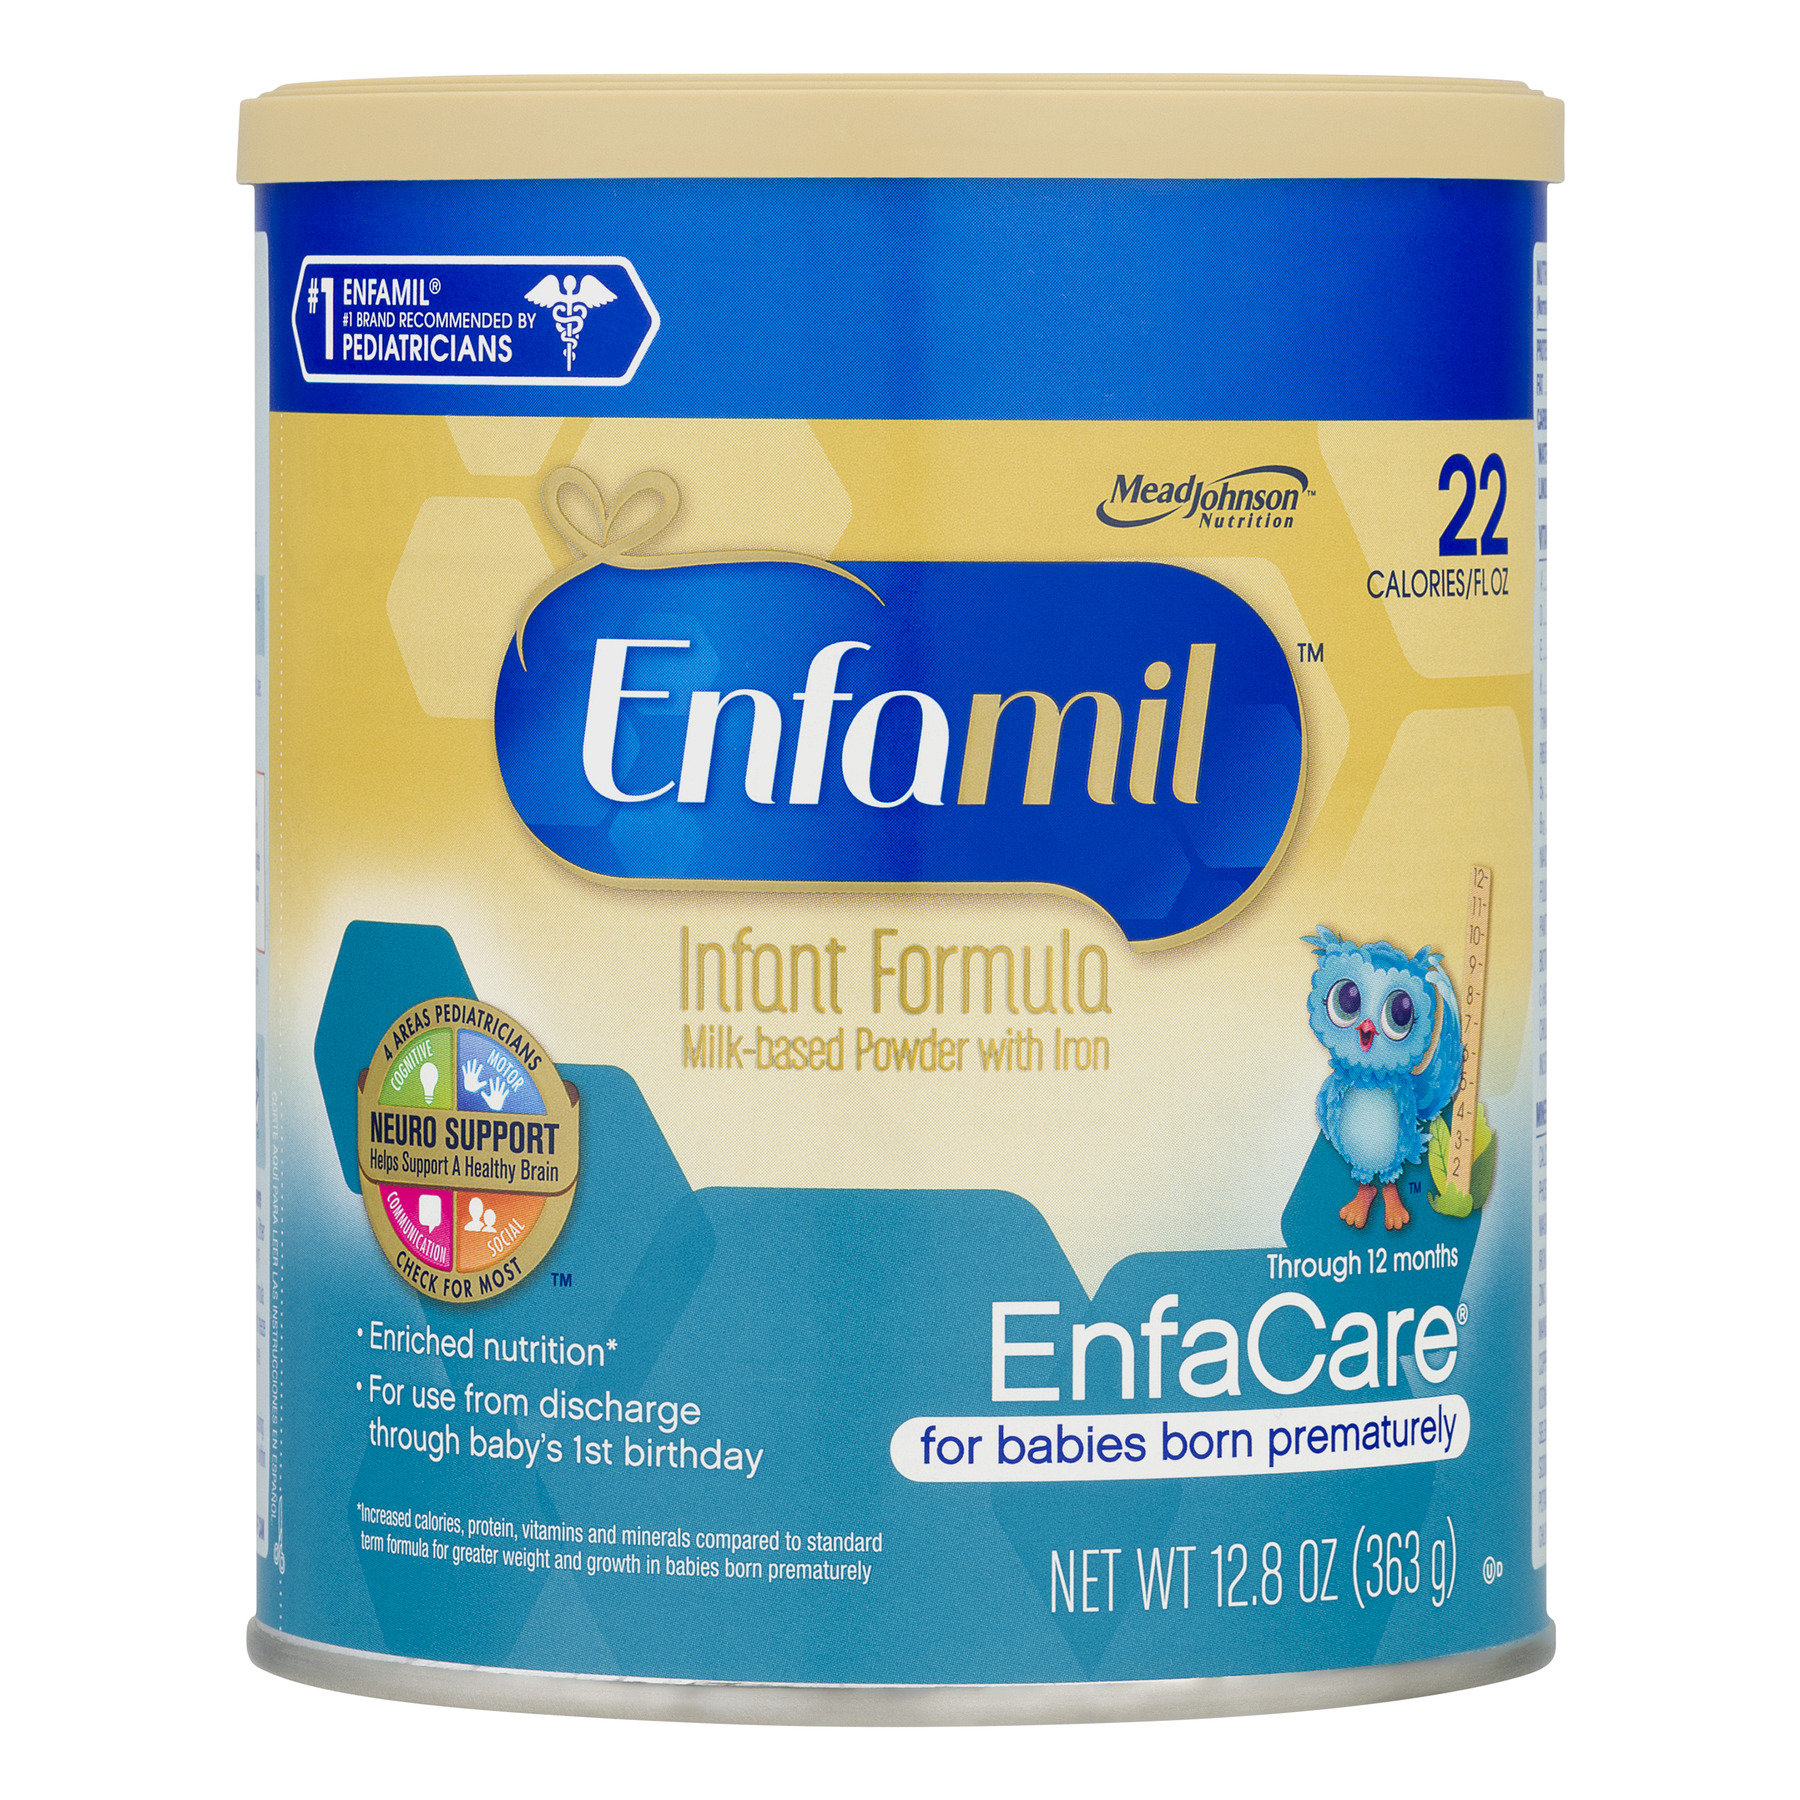 Enfamil EnfaCare Powder Baby Formula, 12.8 oz Canister - image 1 of 6